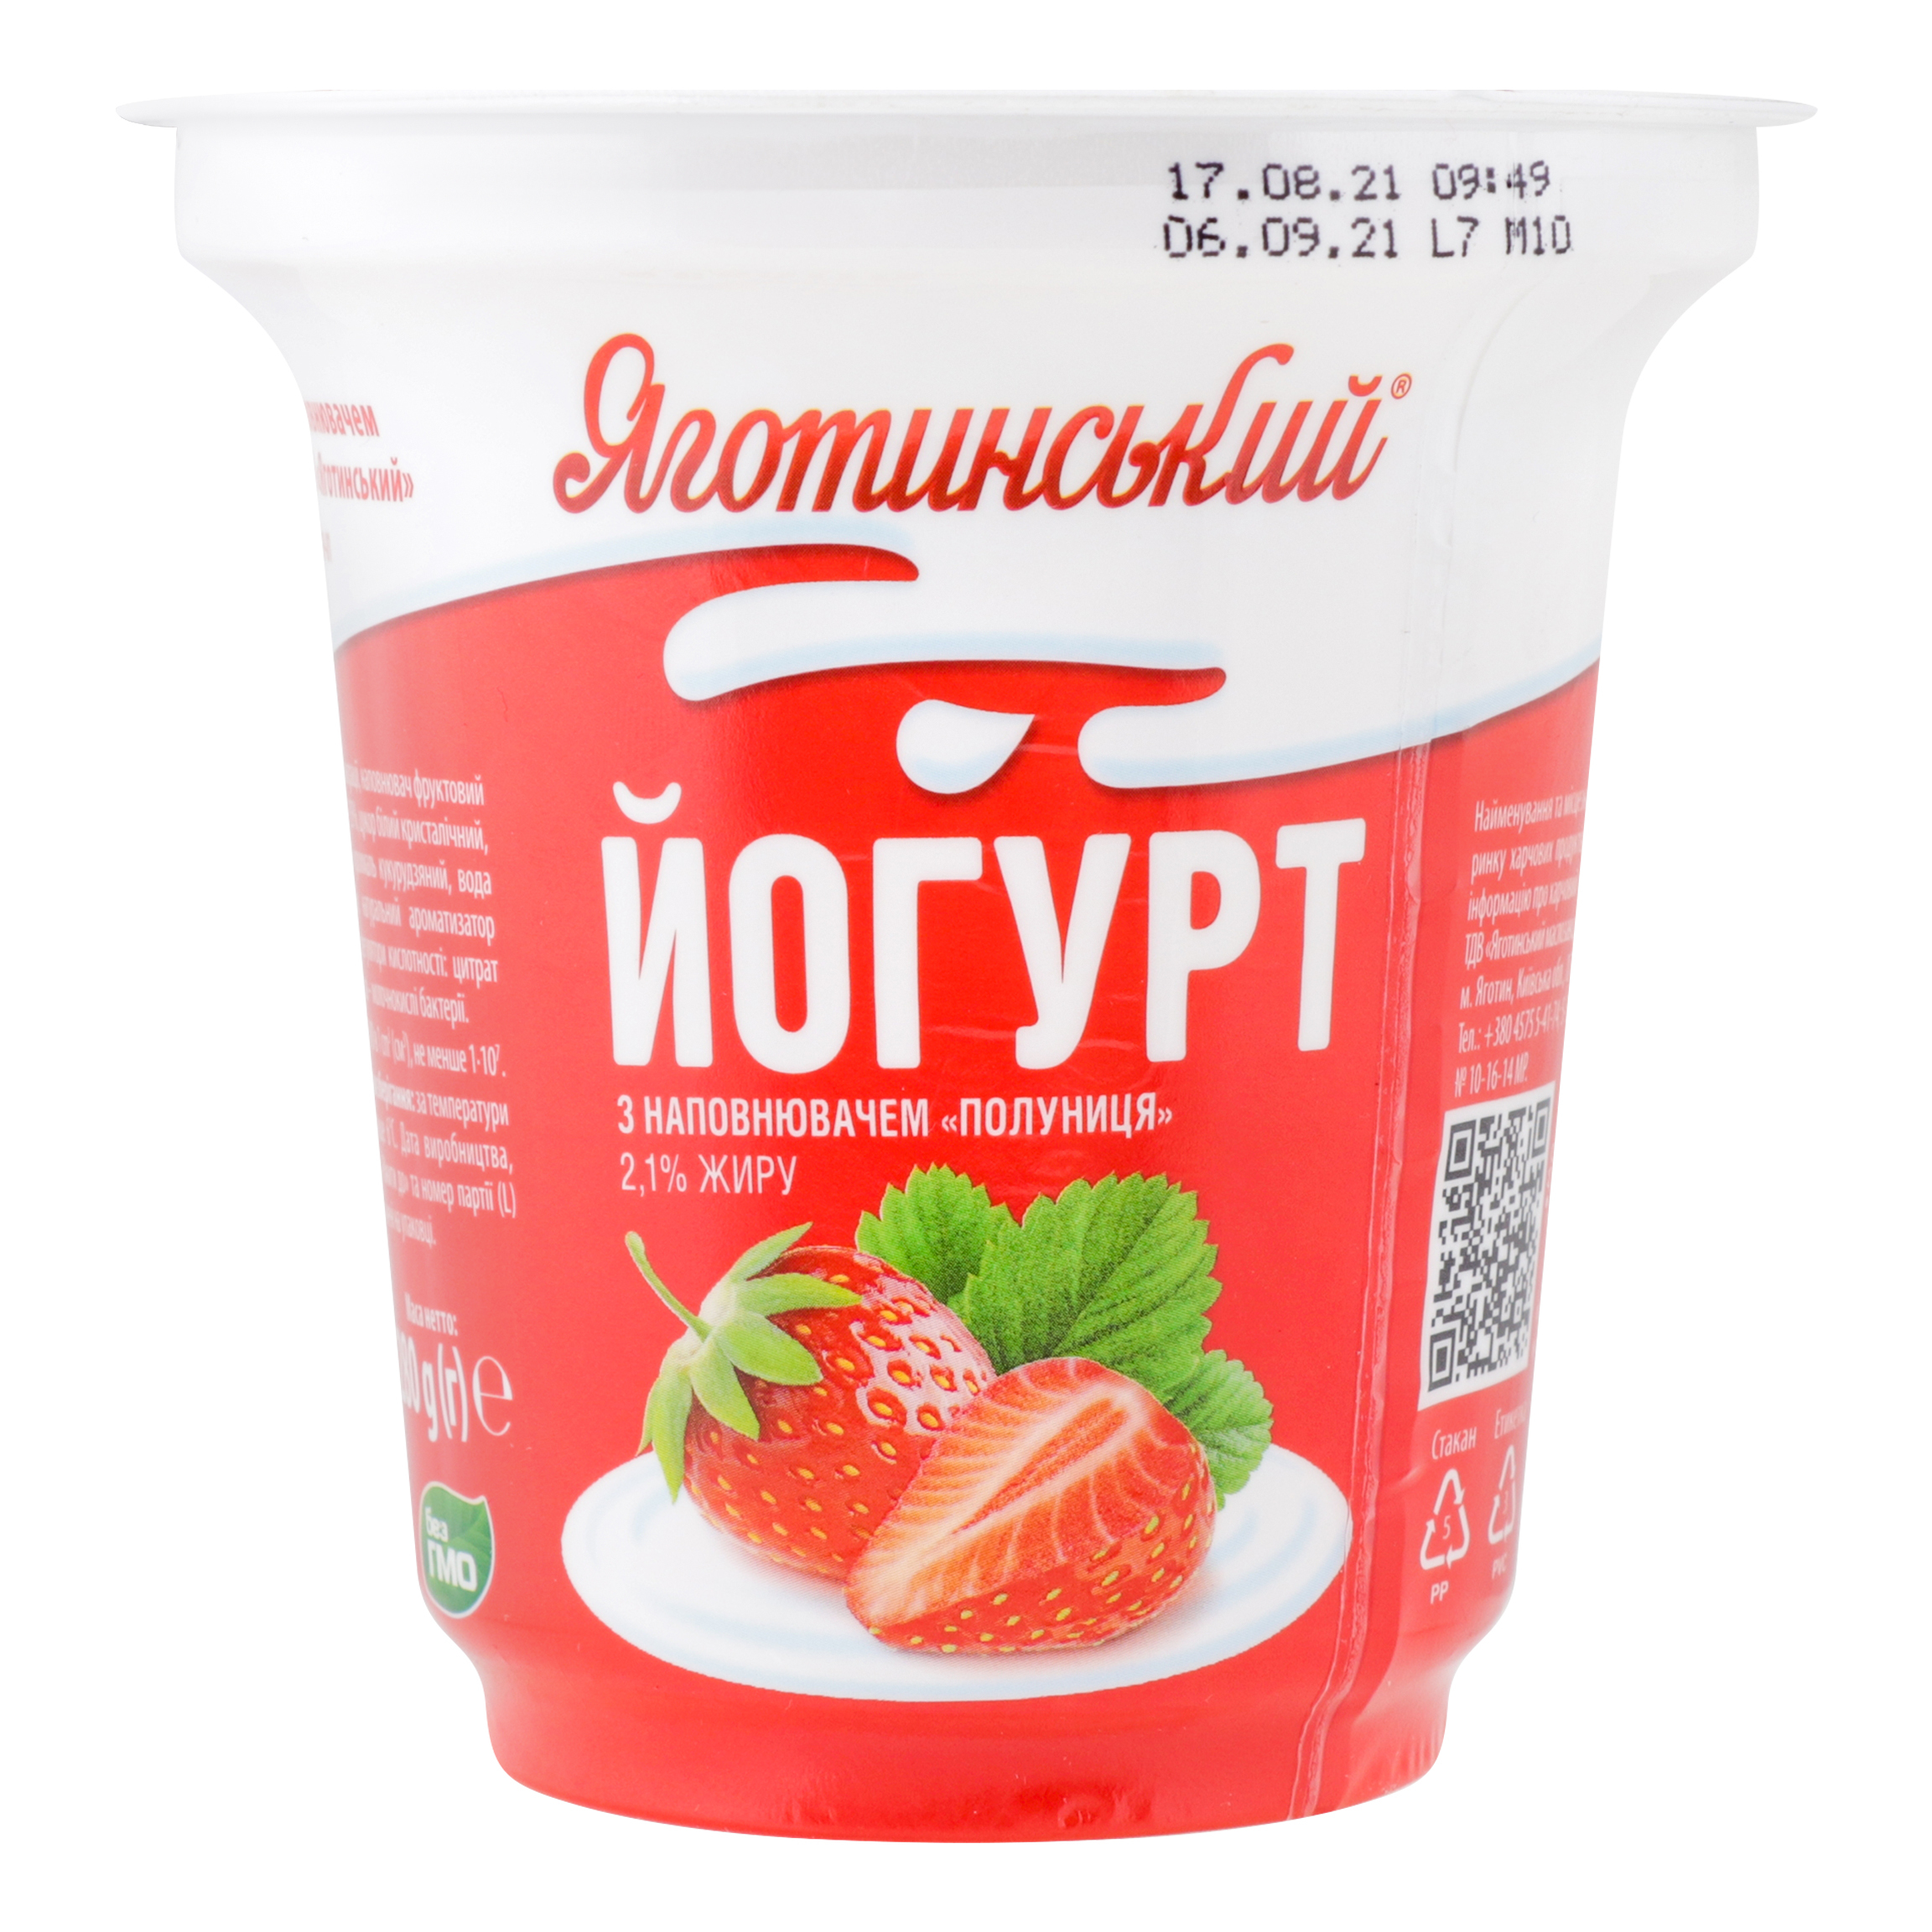 Йогурт Яготинський з наповнювачем полуниця 2,1% стакан 280г